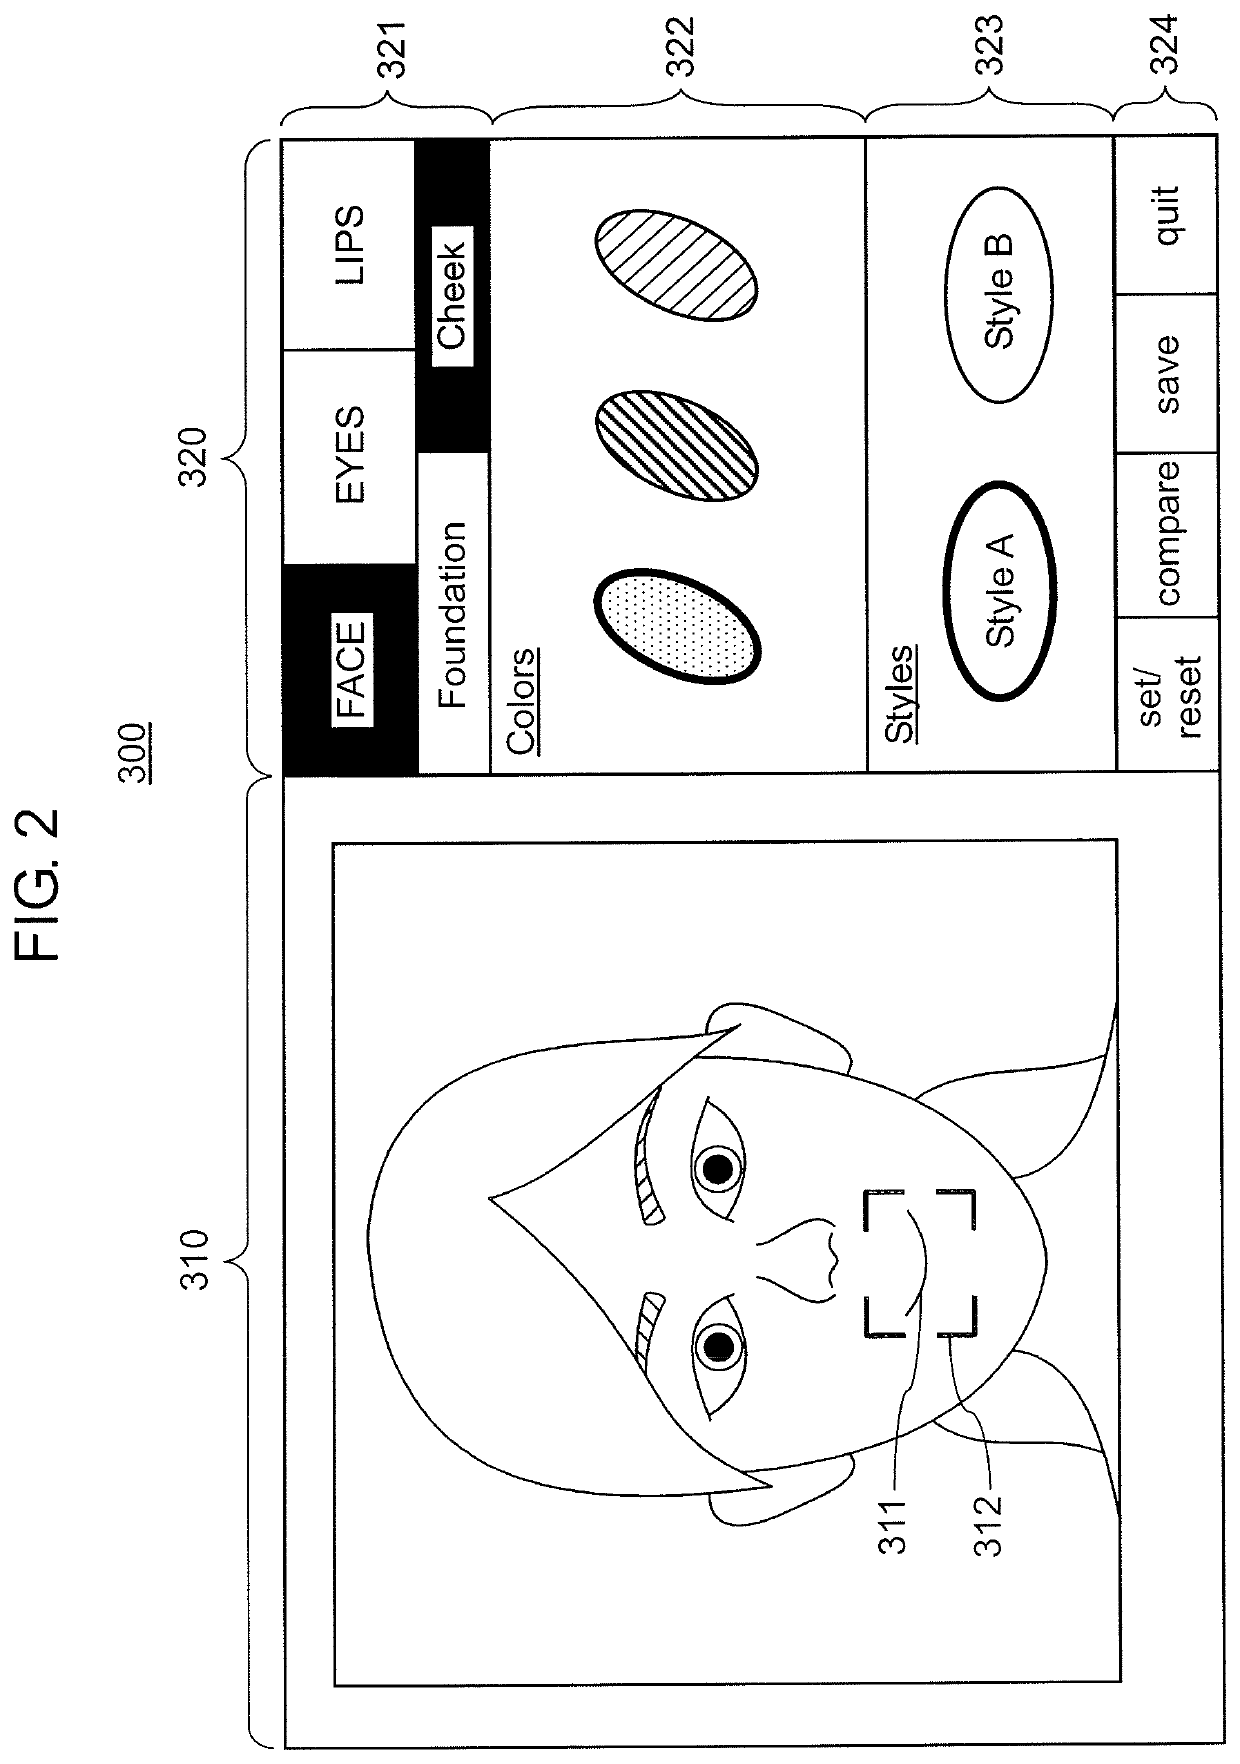 Virtual makeup device, and virtual makeup method